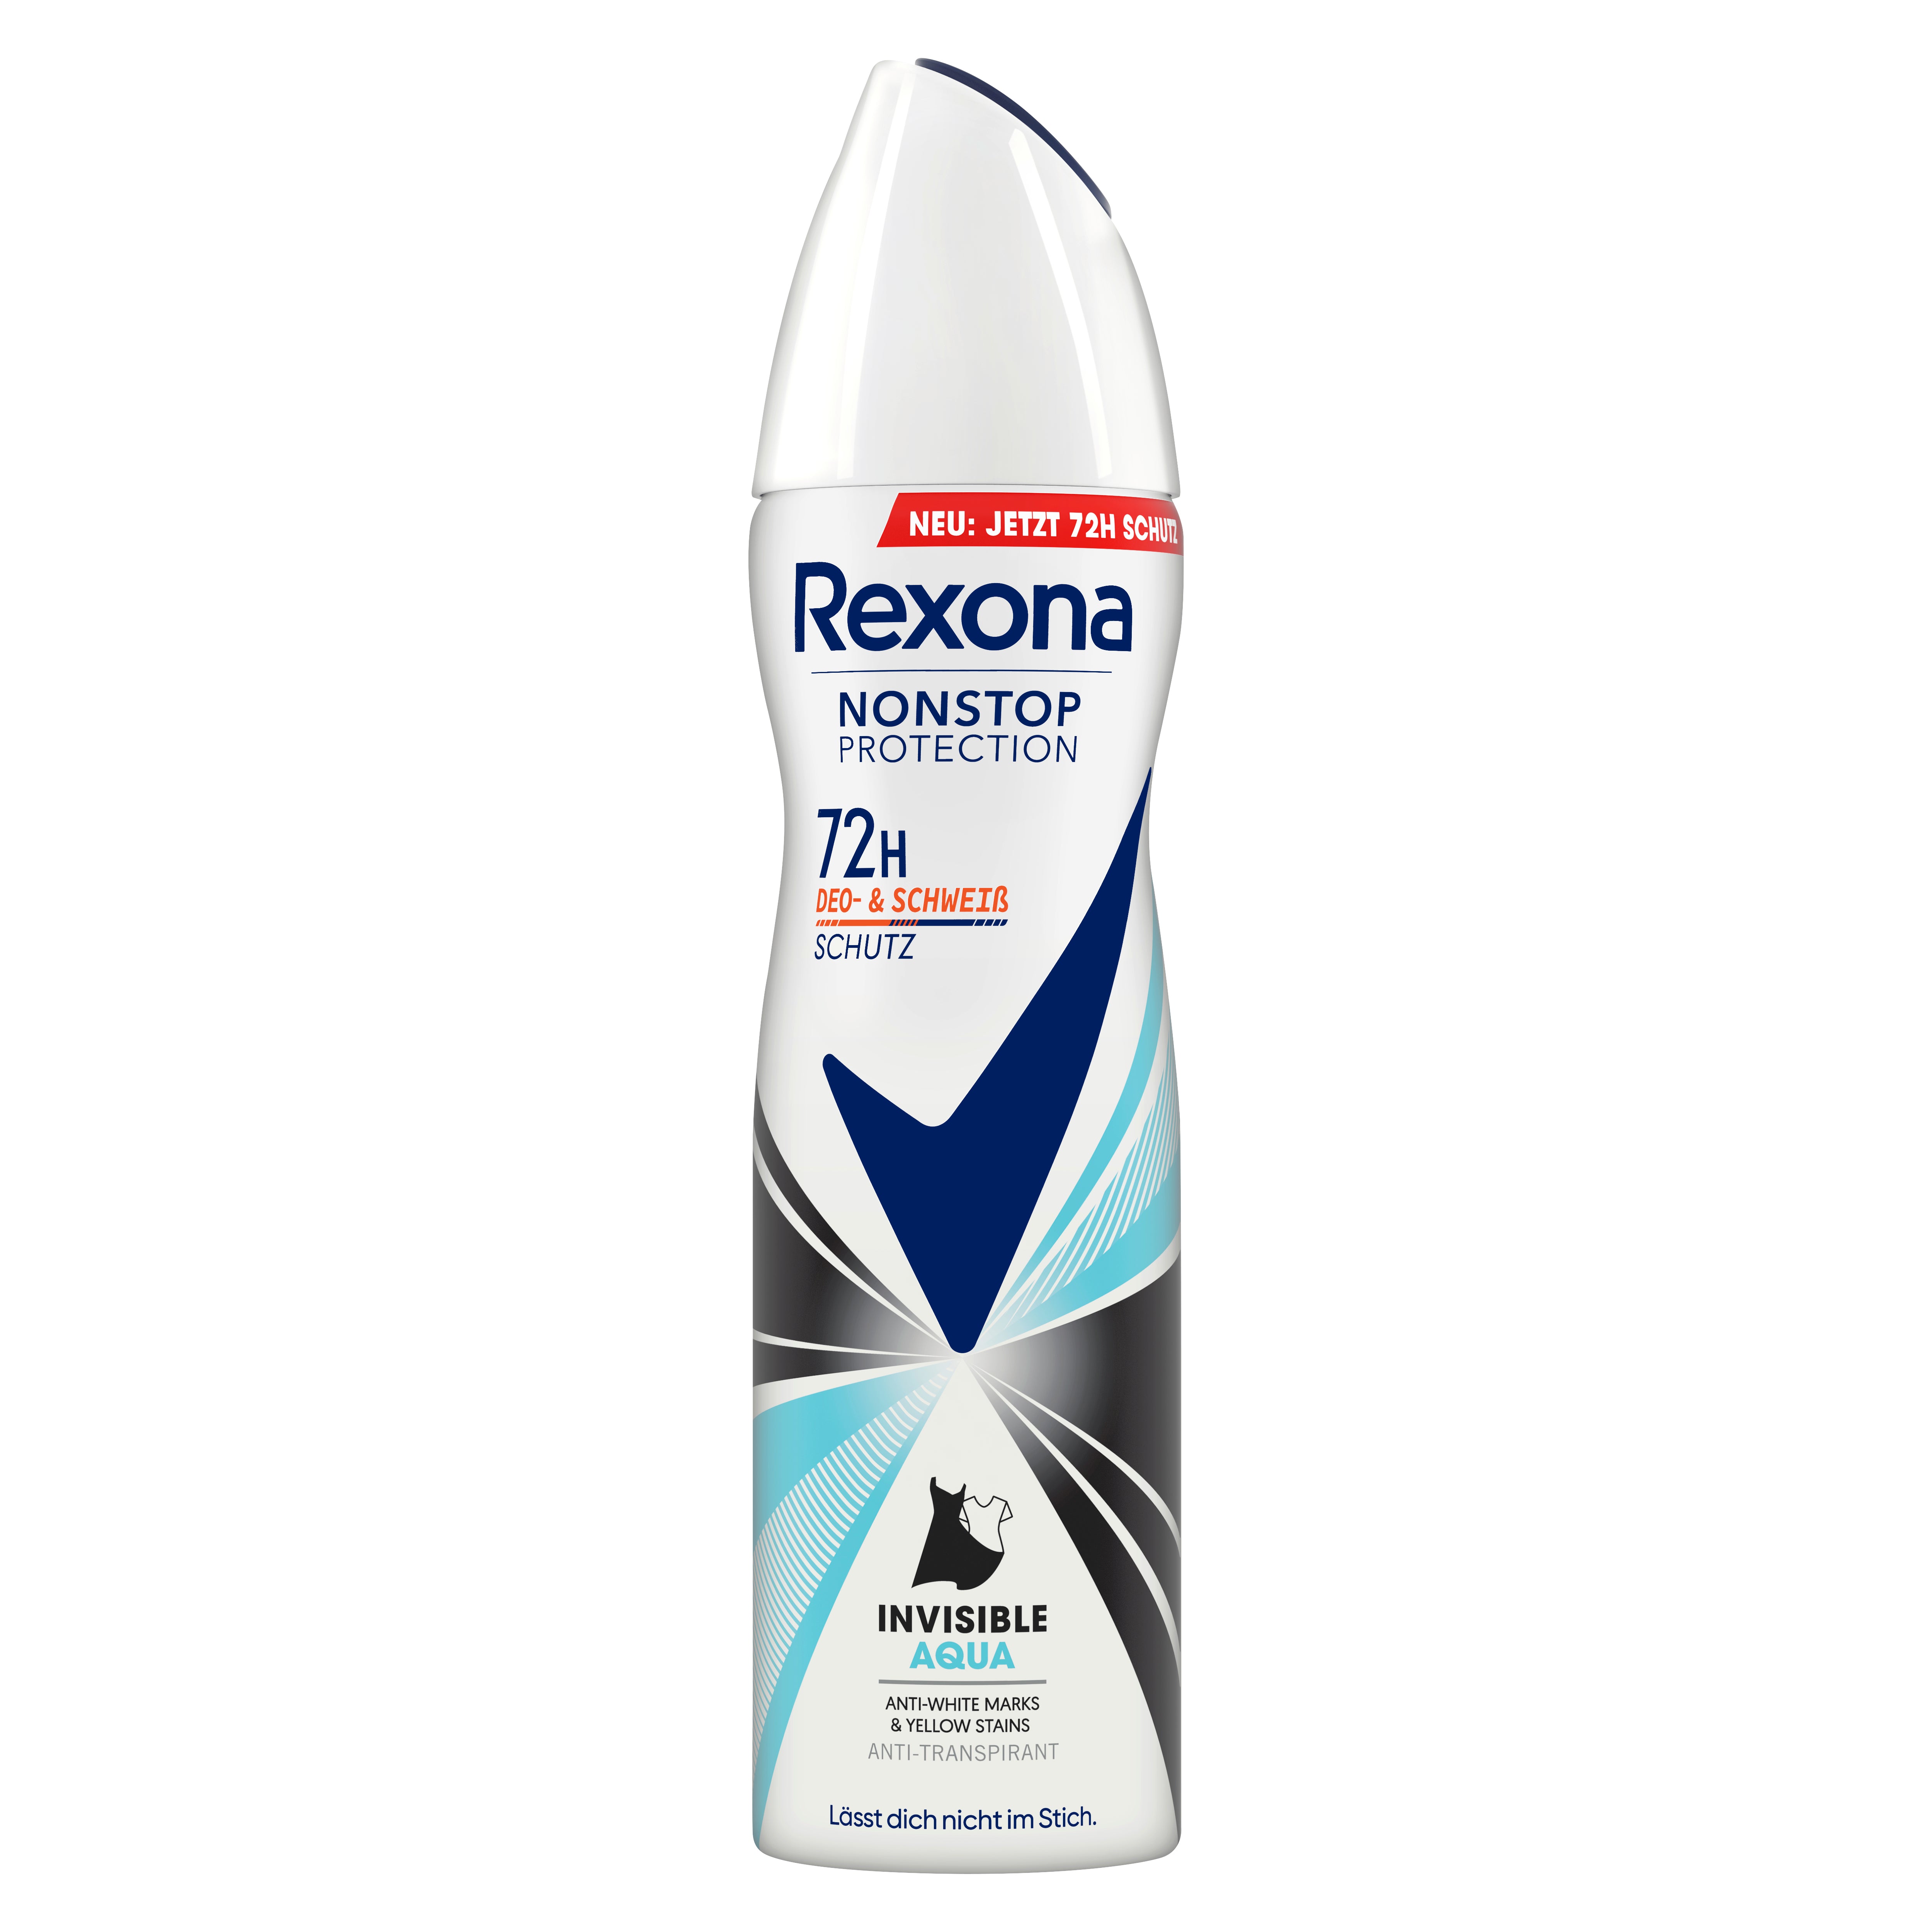 Rexona Nonstop Protection Deospray Invisible Aqua Anti Transpirant mit 72 Stunden Schutz vor Schweiß und Körpergeruch 150 ml